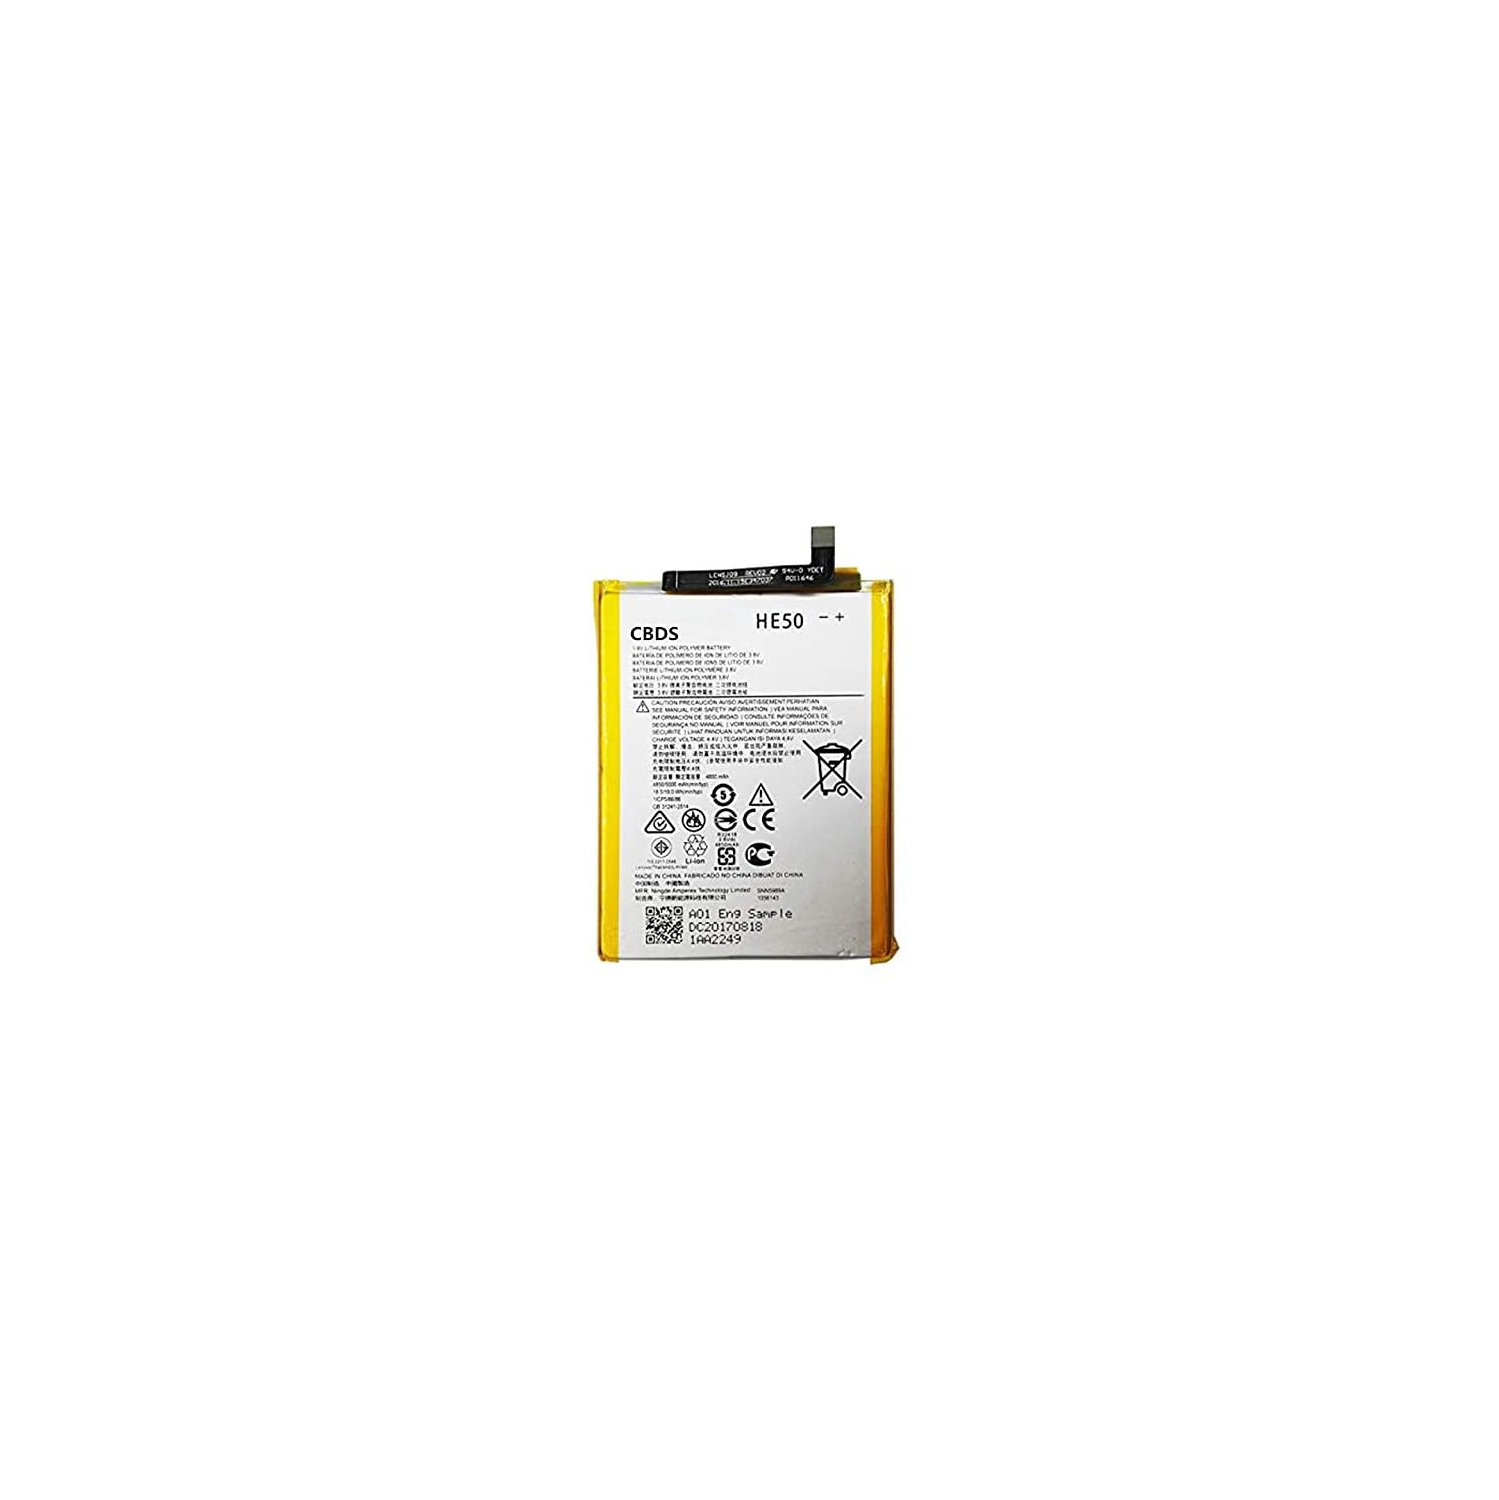 (CBDS) 4850mAh, 18.5 Wh Replacement Battery - Compatible with Motorola Moto E4 Plus E5 Plus XT1774 XT1924 XT1770 XT1775